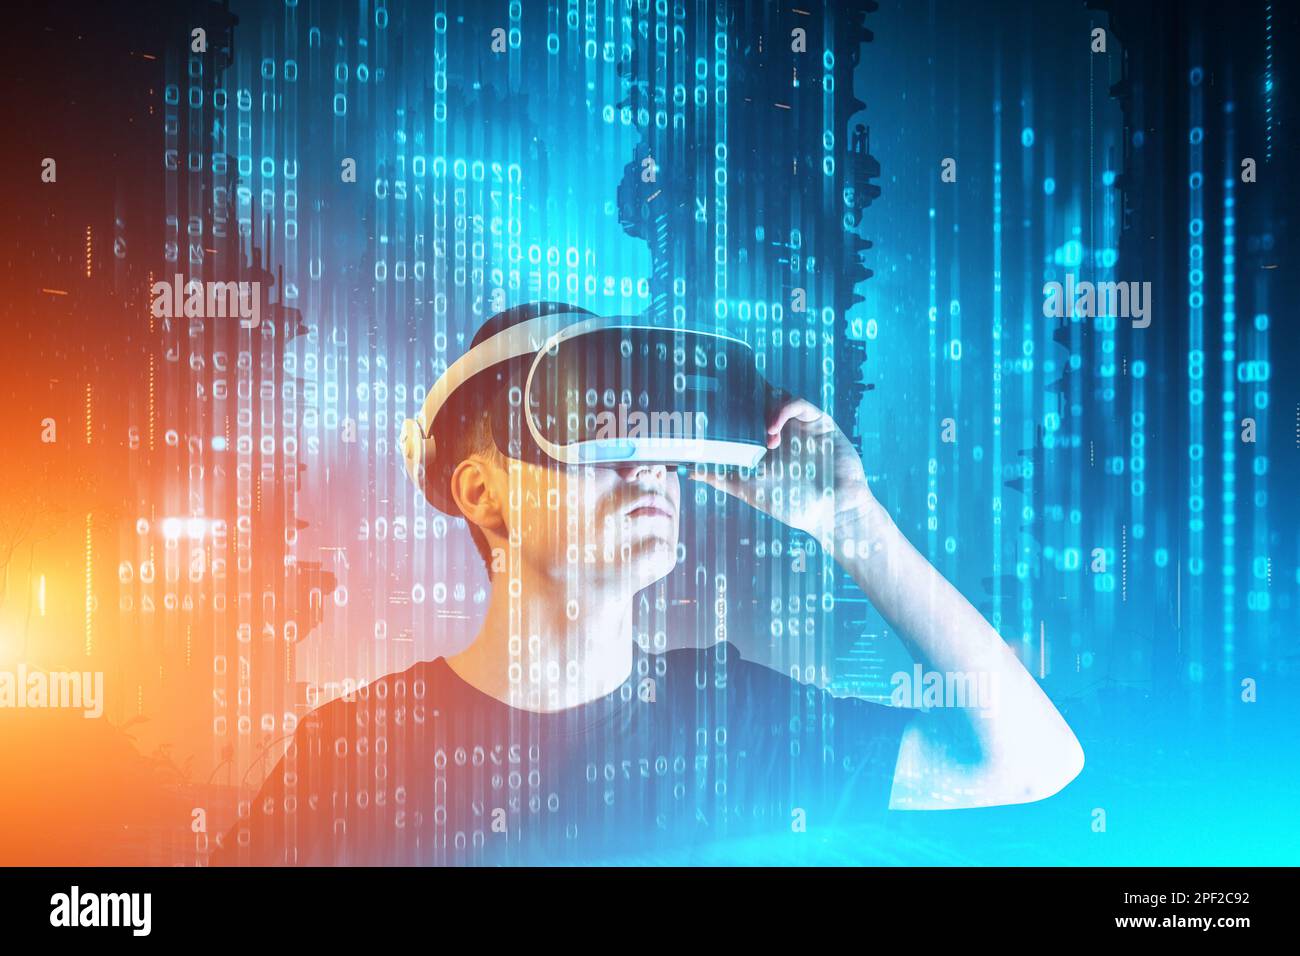 Ein Mann, der in der virtuellen Welt eine Virtual-Reality-Brille trägt. Augmented Reality, Wissenschaft, Metaverse, Zukunftstechnologie, VR-Konzept. Futuristische 3D-Brille mit virtueller Projektion in der digitalen Metaverswelt Stockfoto